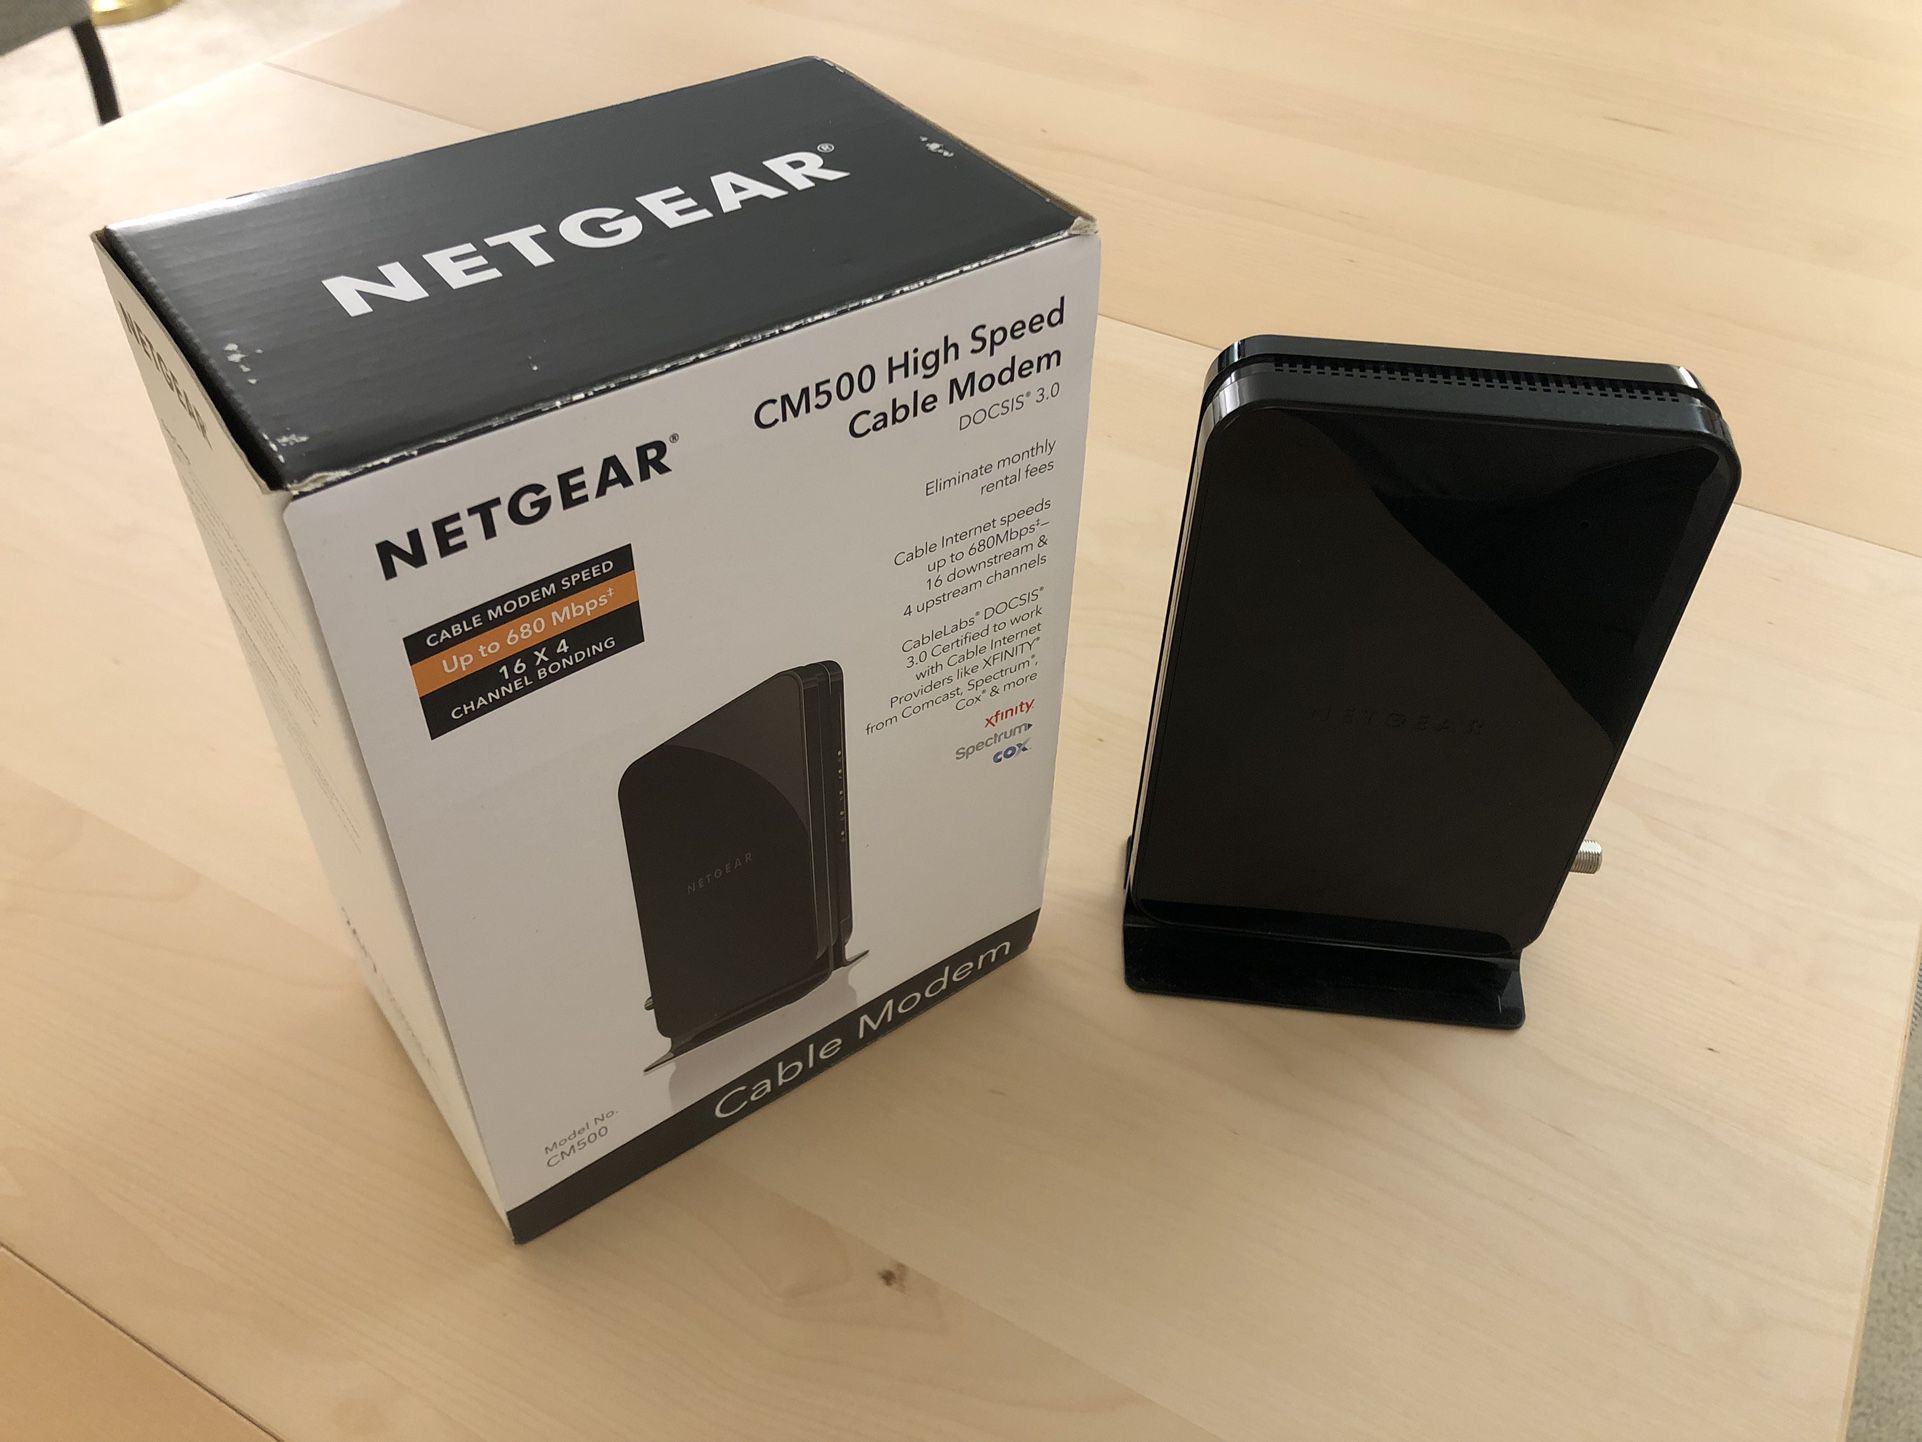 Netgear CM500 Modem | DOCSIS 3.0